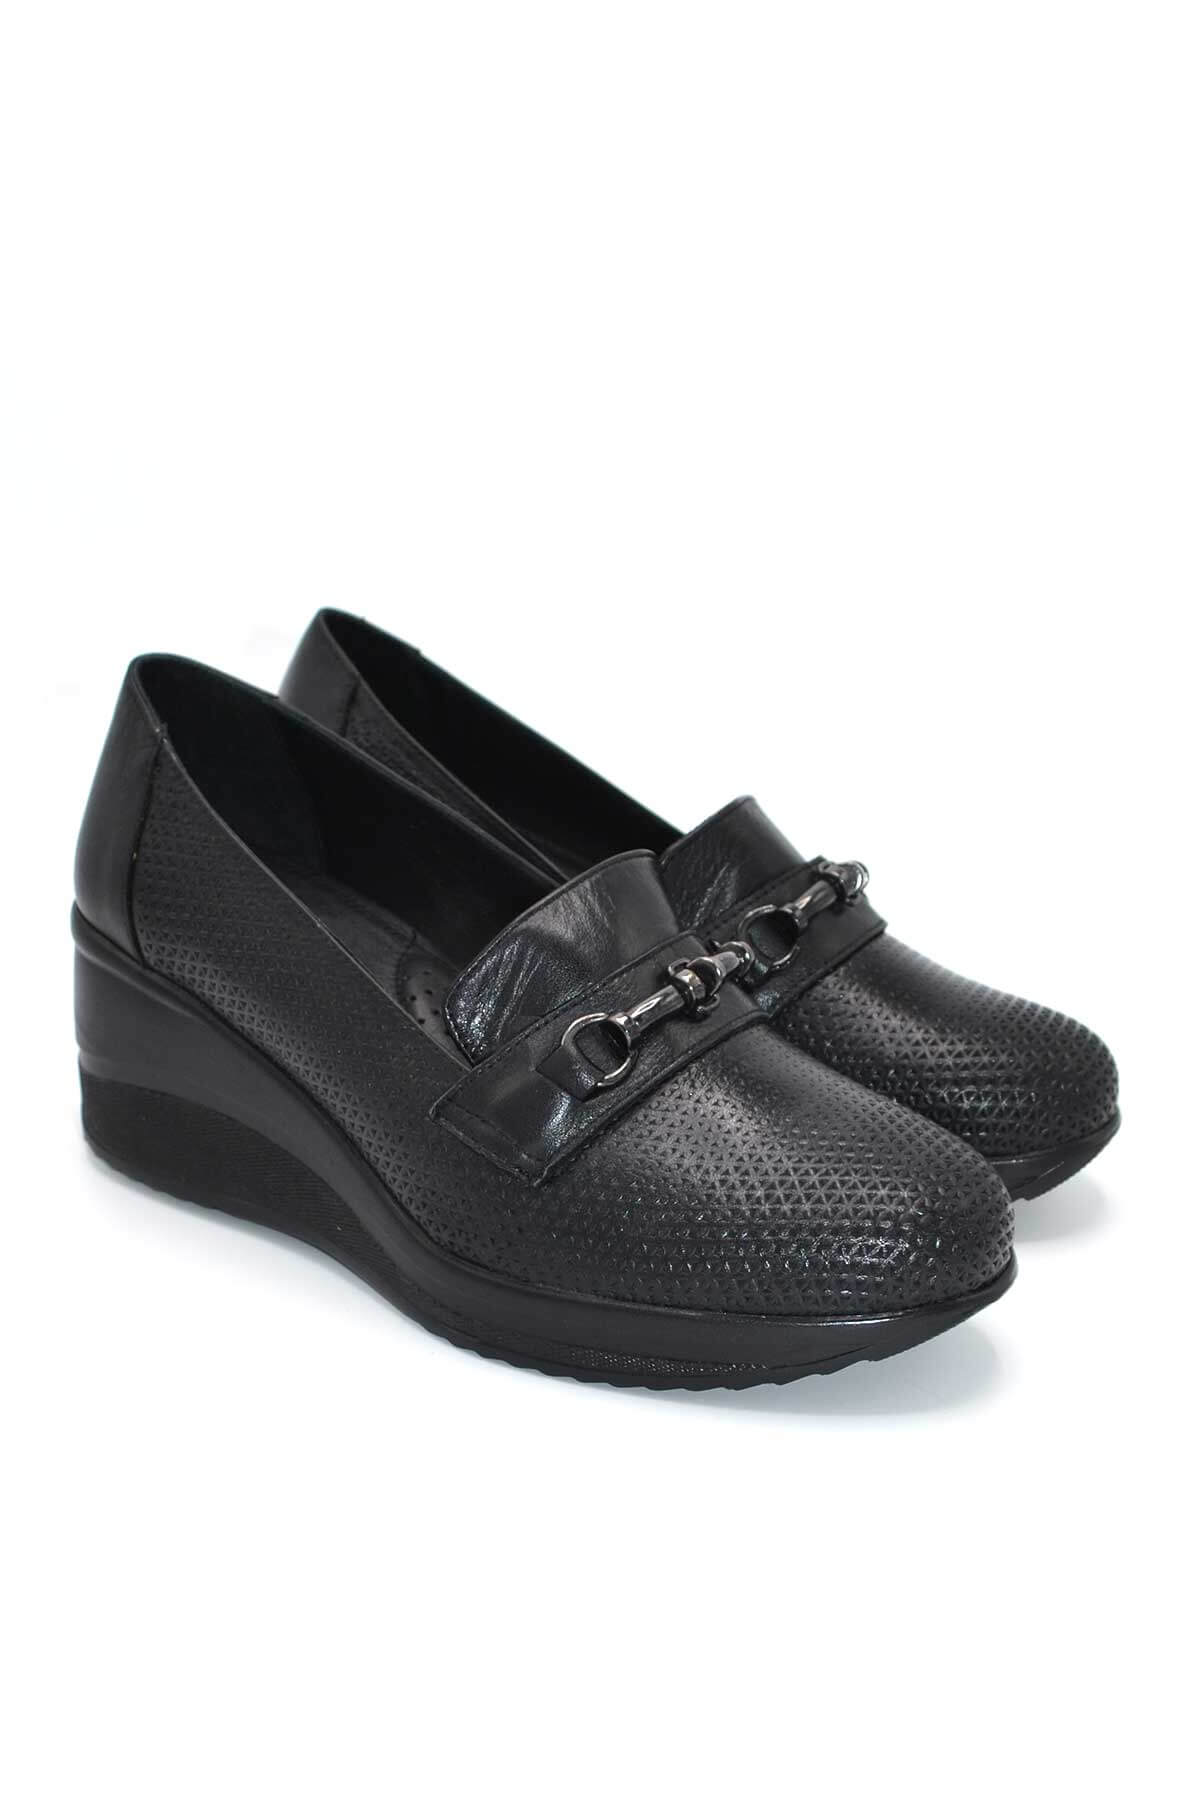 Kadın Dolgu Topuk Deri Ayakkabı Siyah 2111514Y - Thumbnail